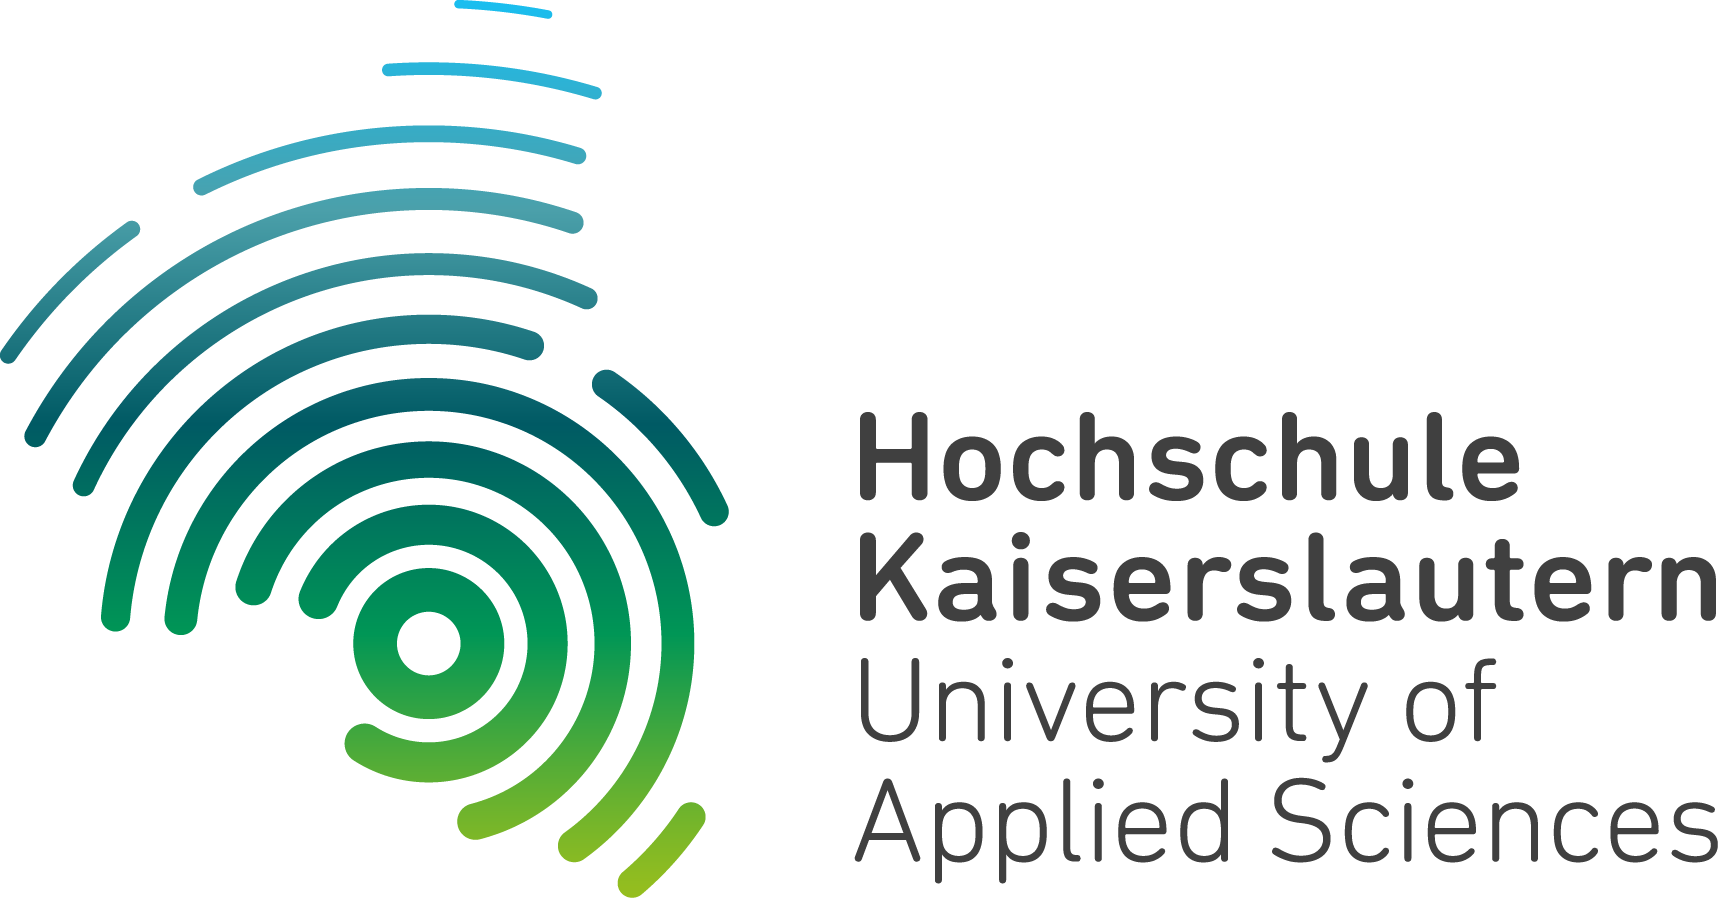 Kaiserslautern University of Applied Sciences